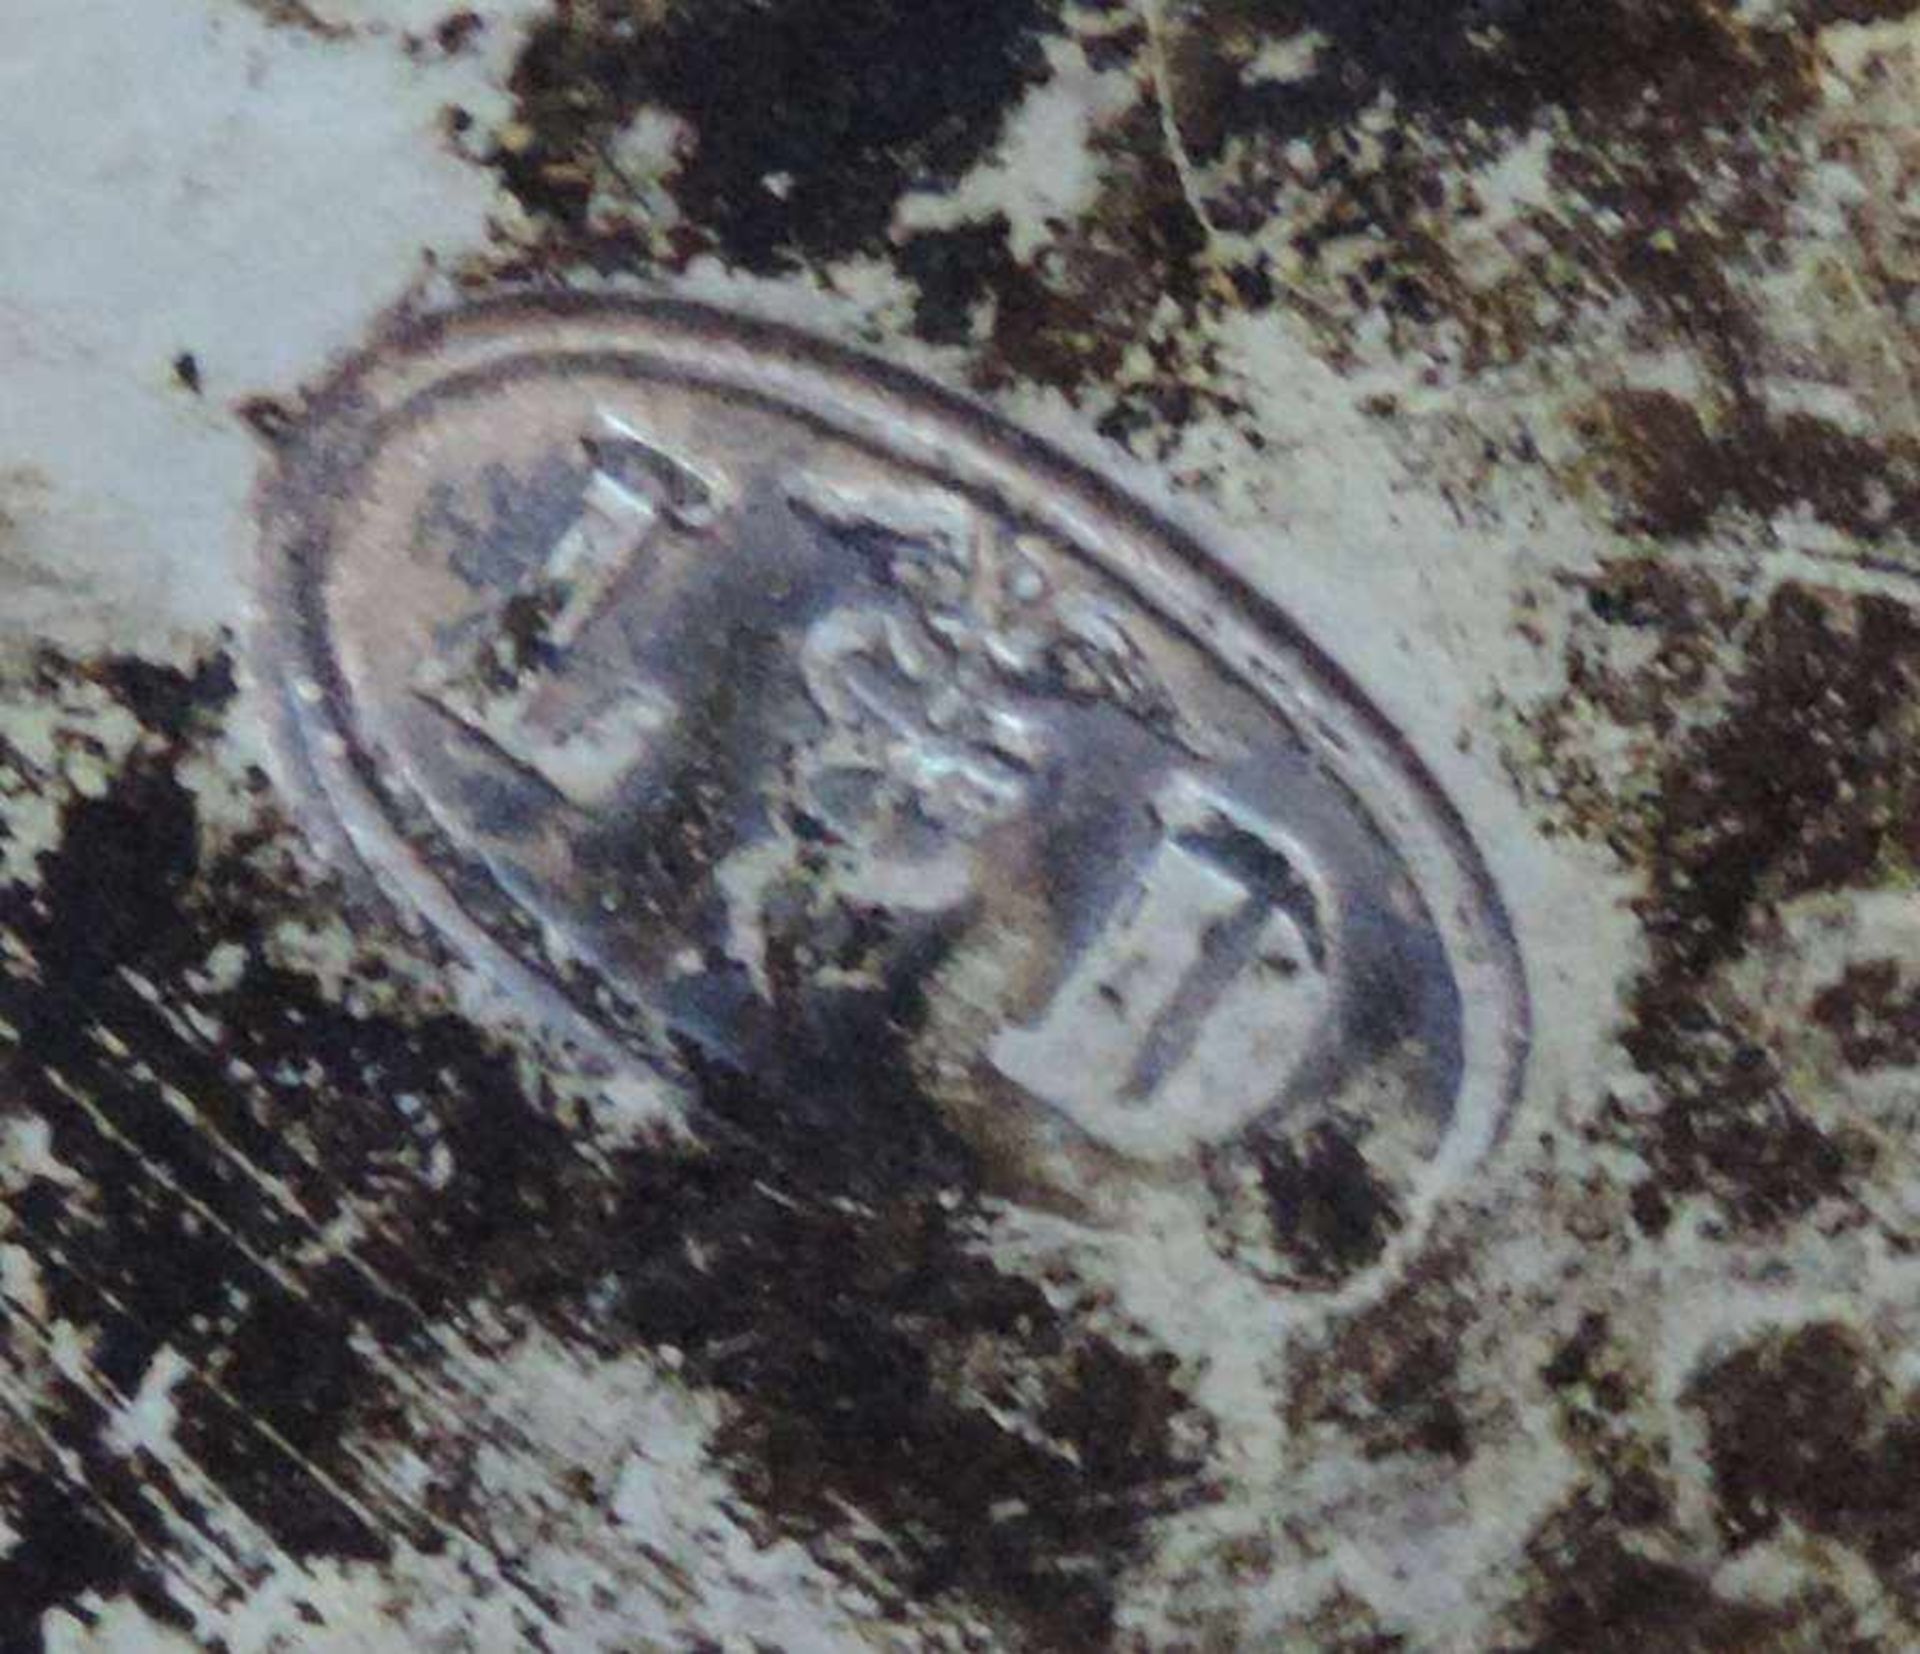 2-LITERMASS, Zinn, Frankreich, 19.Jh., Manuf L/Hermesstab D,(unentschl), Zylinderkorpus auf - Bild 3 aus 3